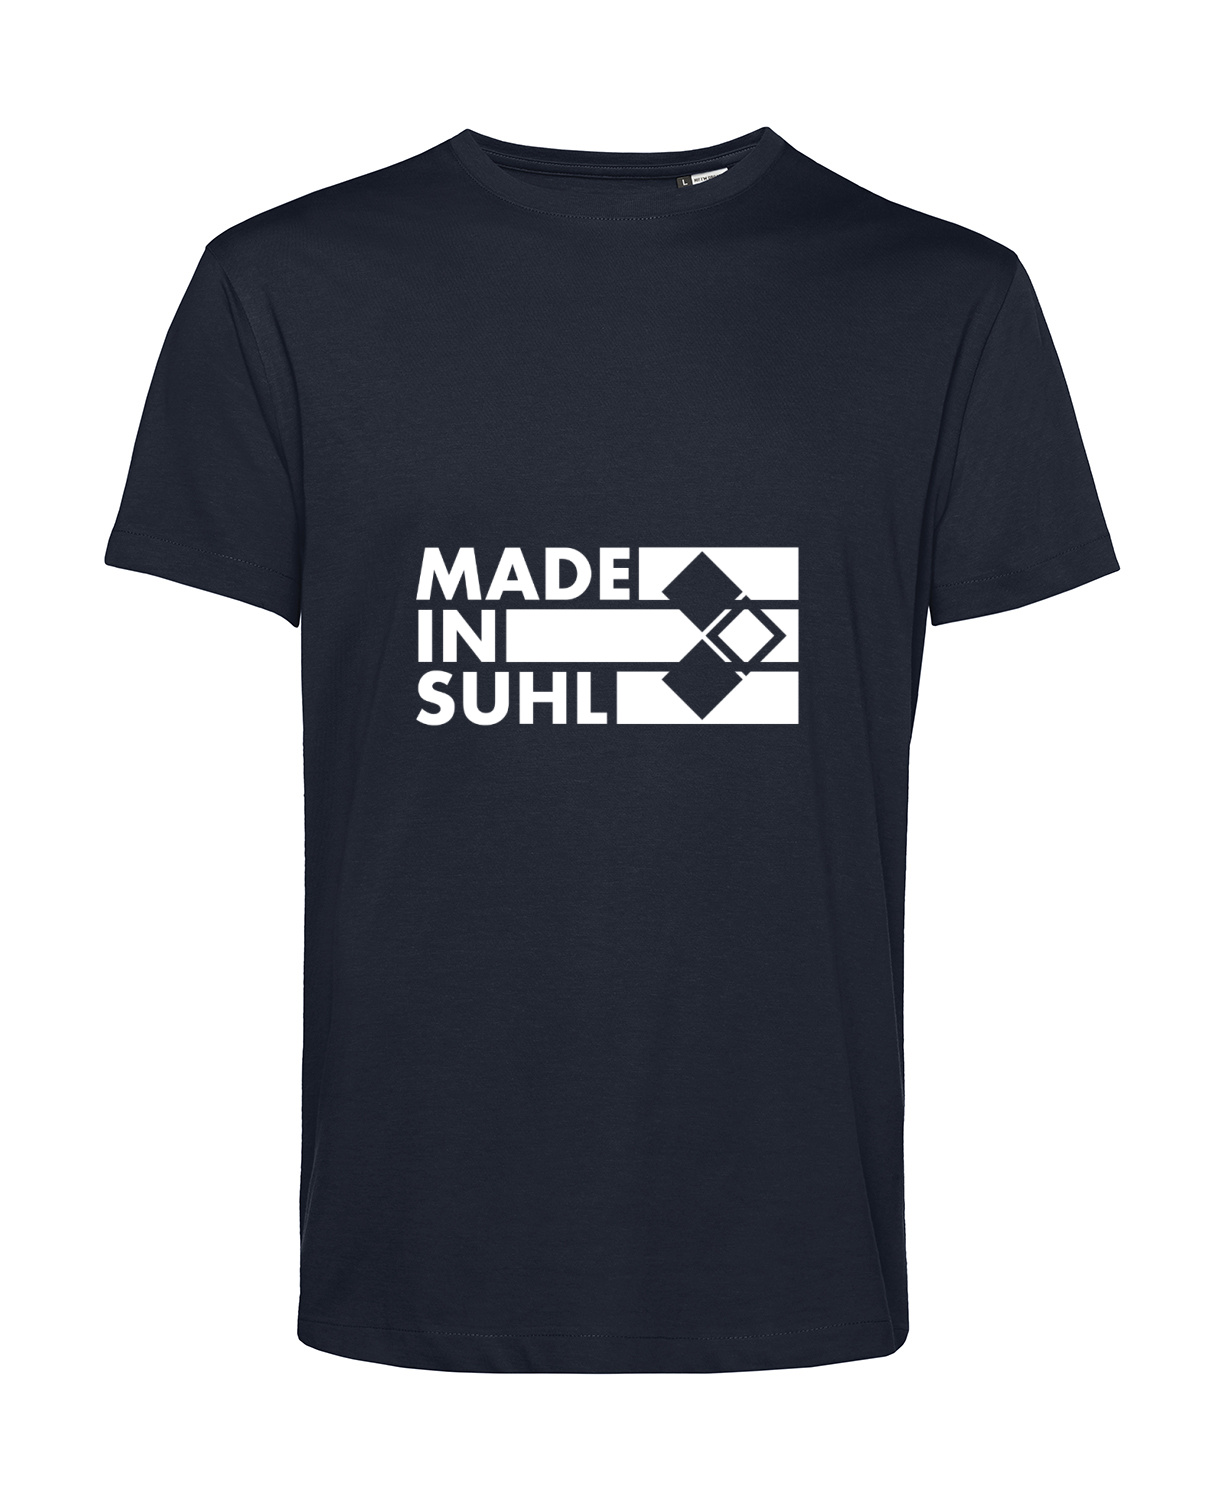 Nachhaltiges T-Shirt Herren 2Takter - Made in Suhl